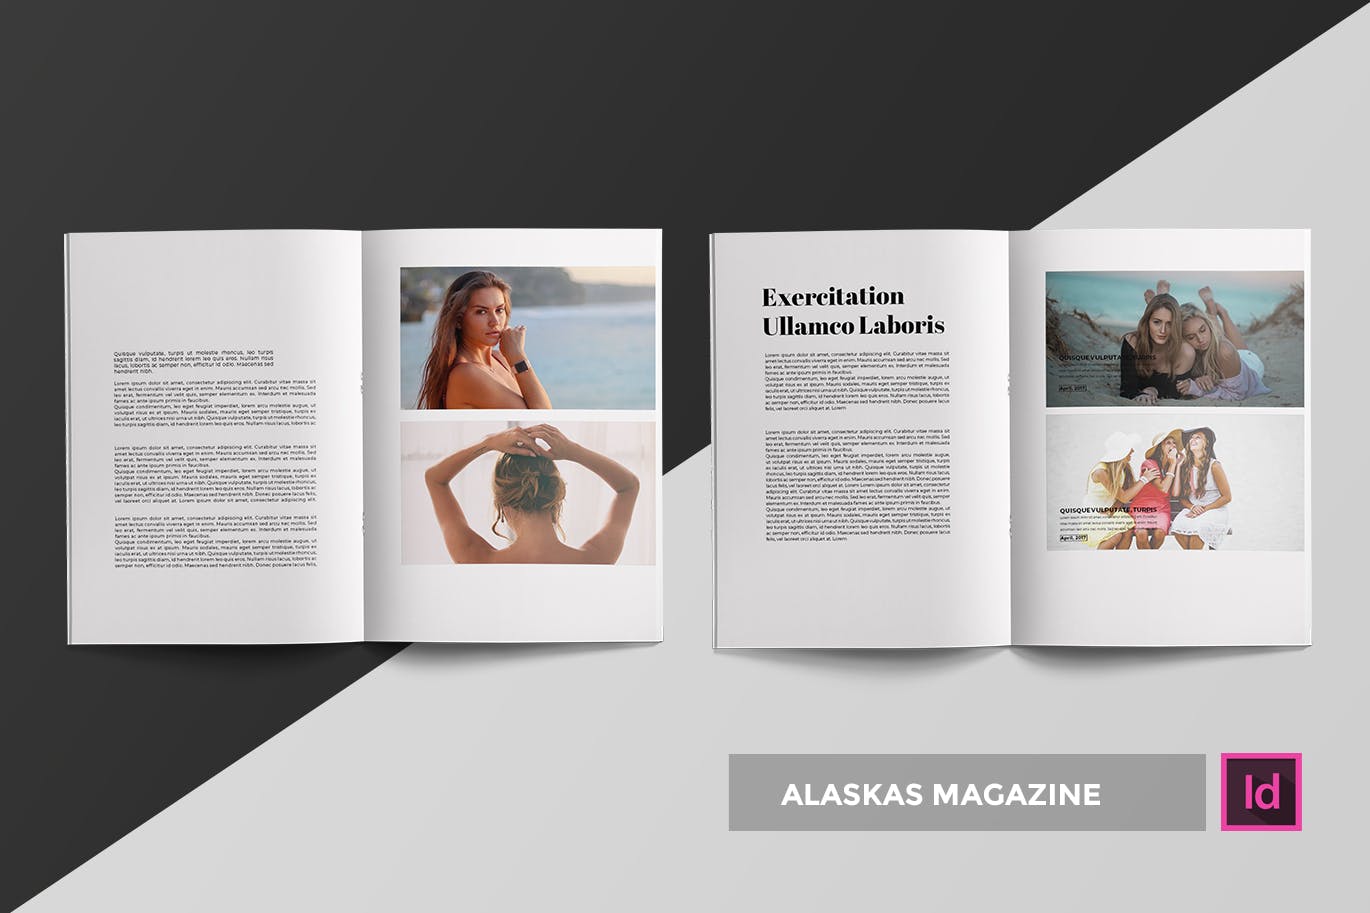 高端人物/服装/访谈主题素材库精选杂志版式排版设计INDD模板 Alaskas | Magazine Template插图(1)